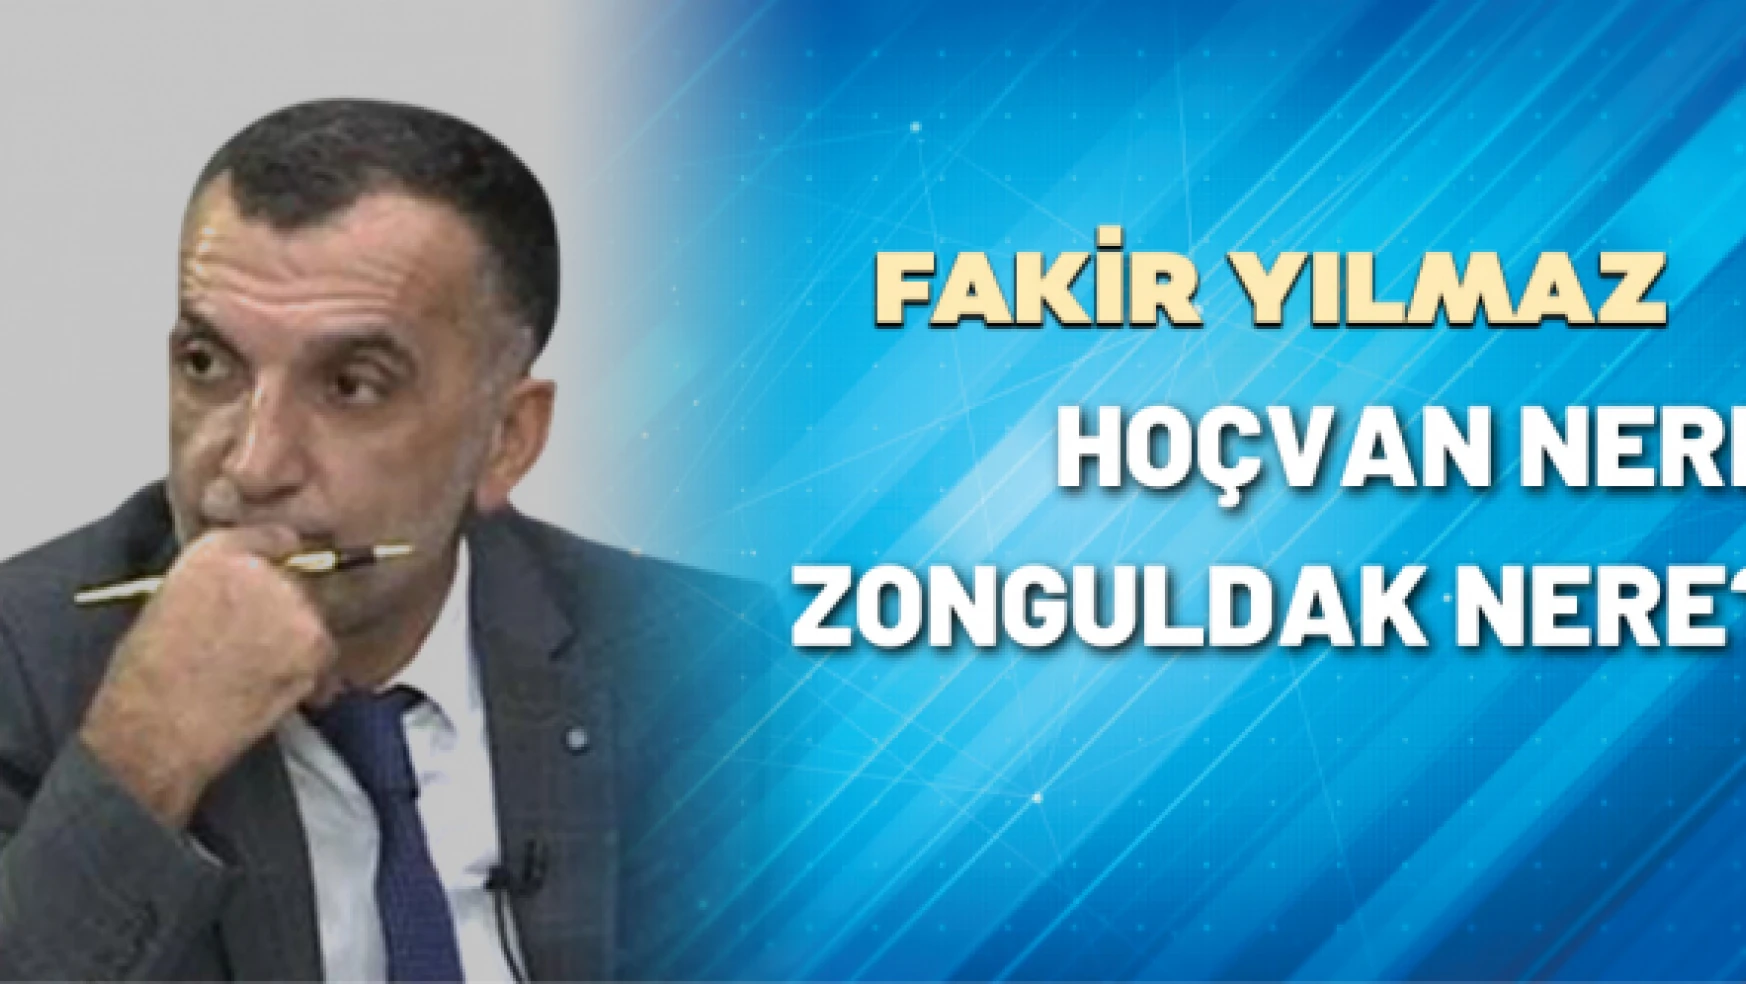 Gazeteci Fakir Yılmaz yazdı: Hoçvan nere Zonguldak nere?